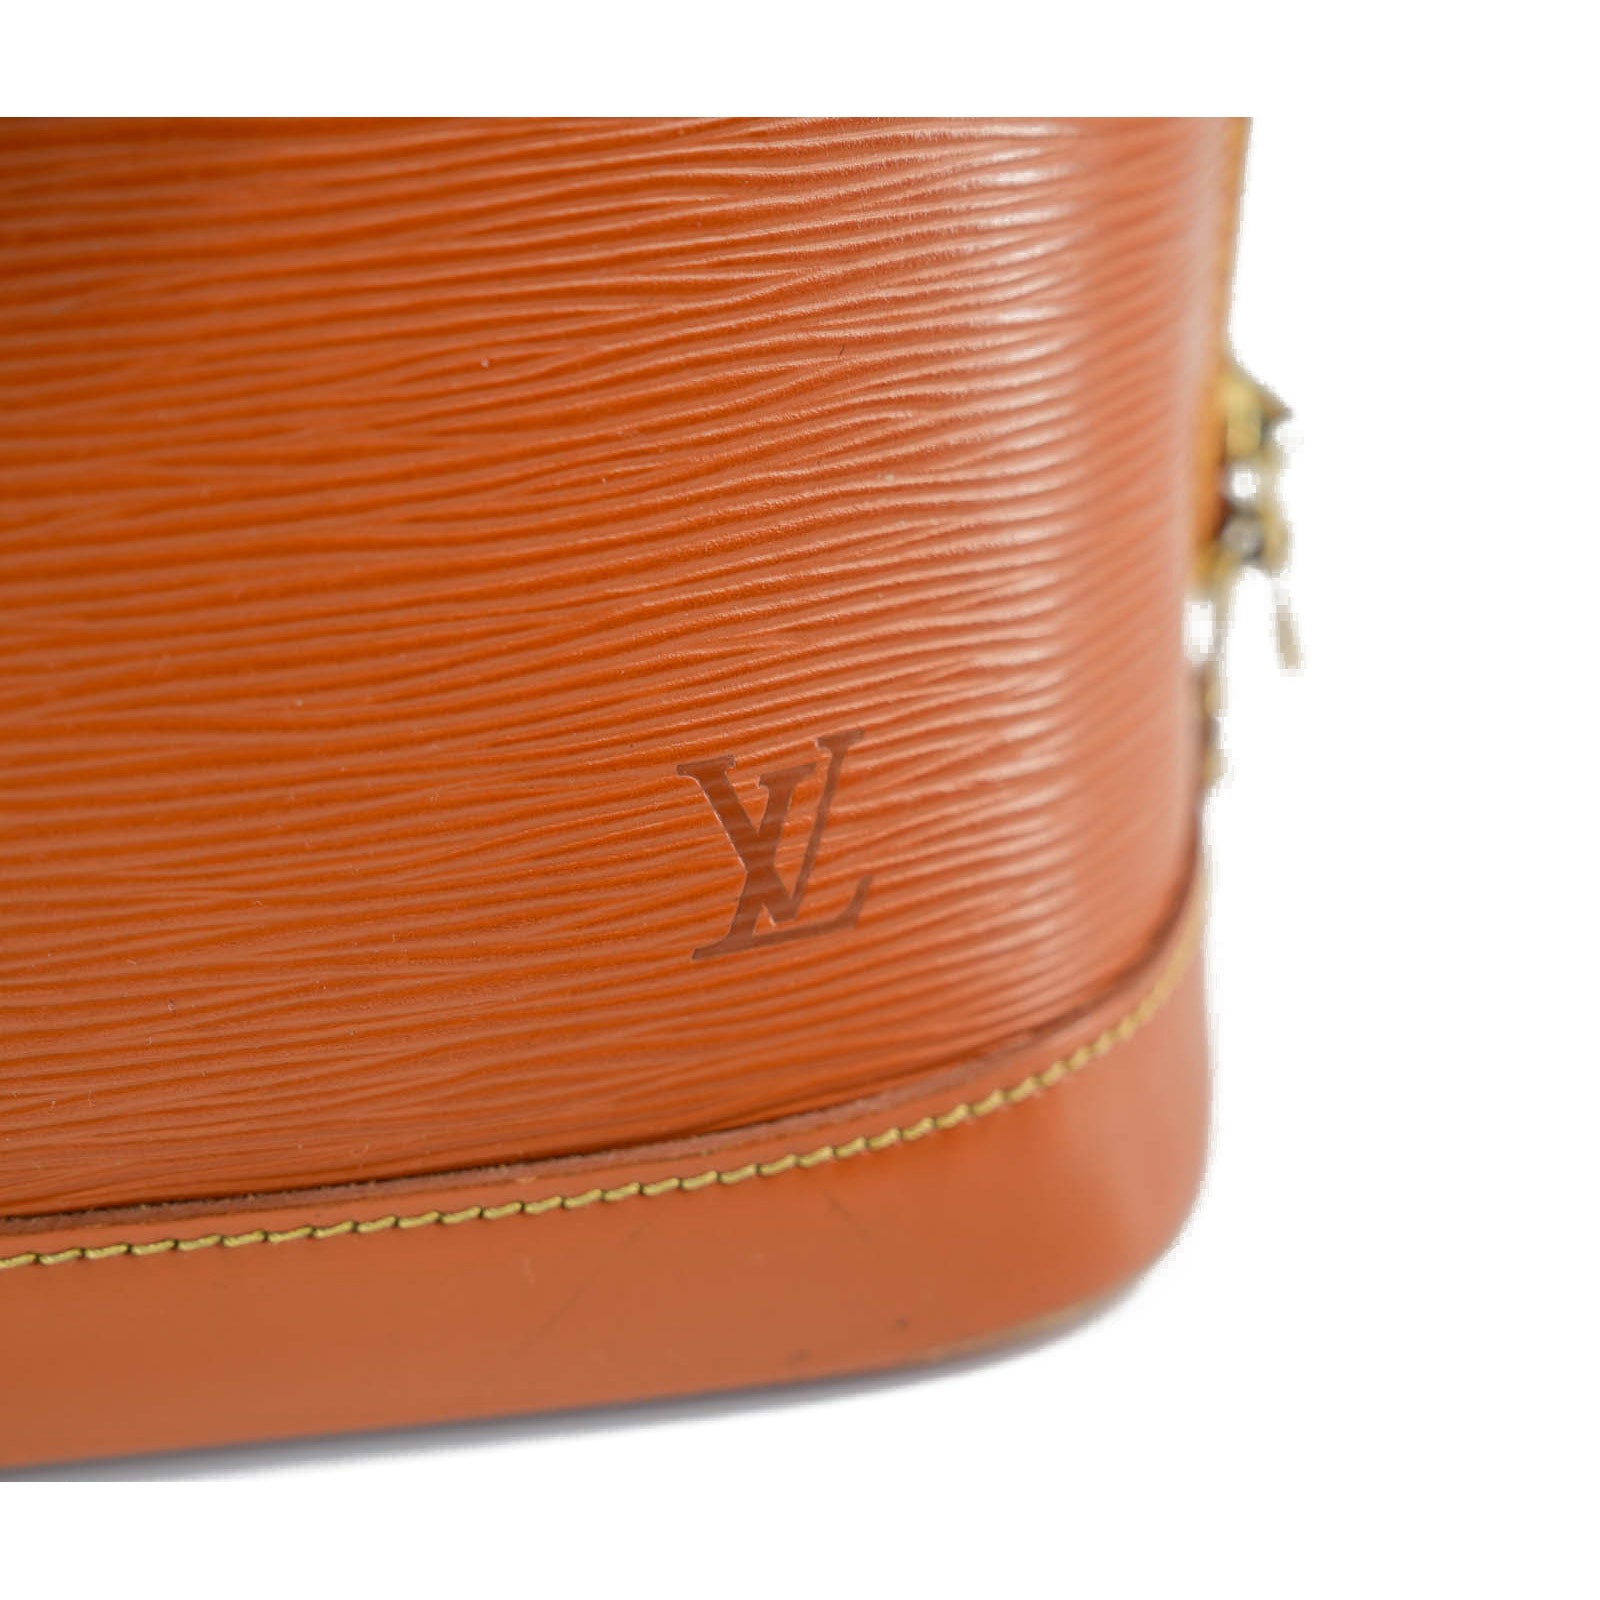 Louis Vuitton Epi Leather Alma PM